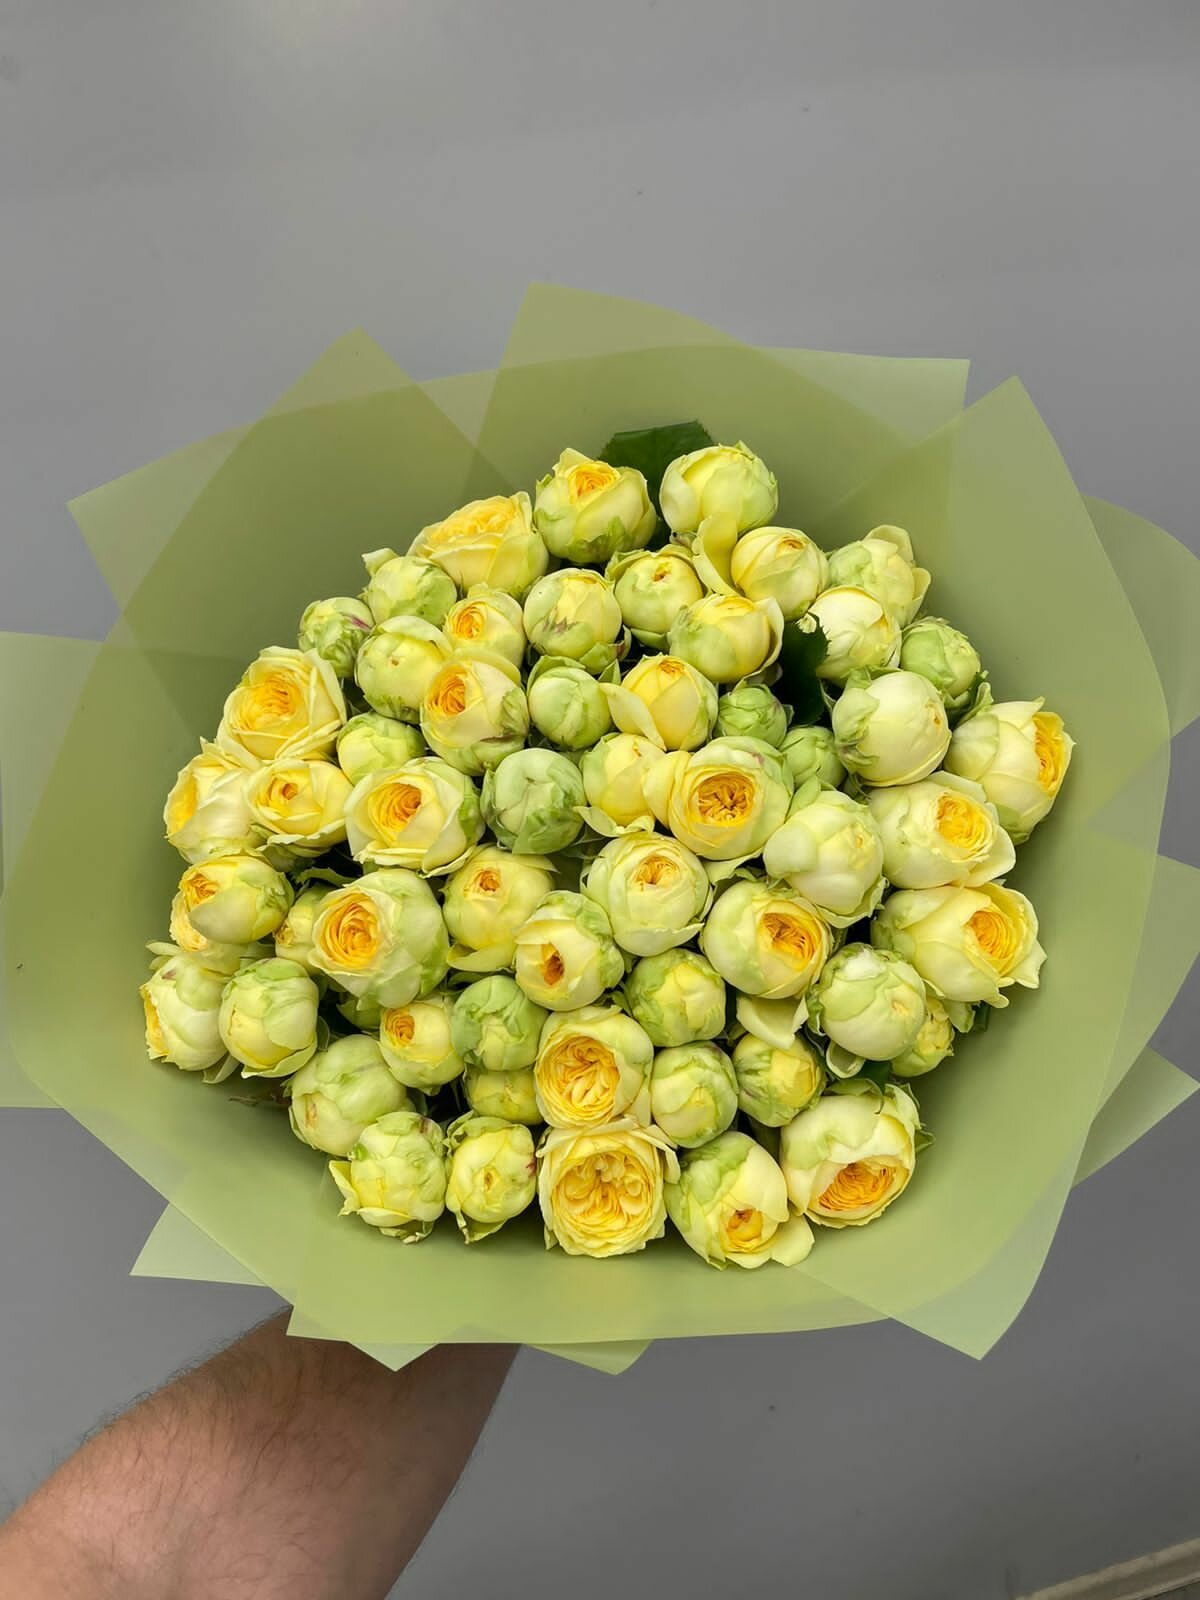 Роза, пионовидная роза, кустовая роза, цветы свежесрезанные 40 см